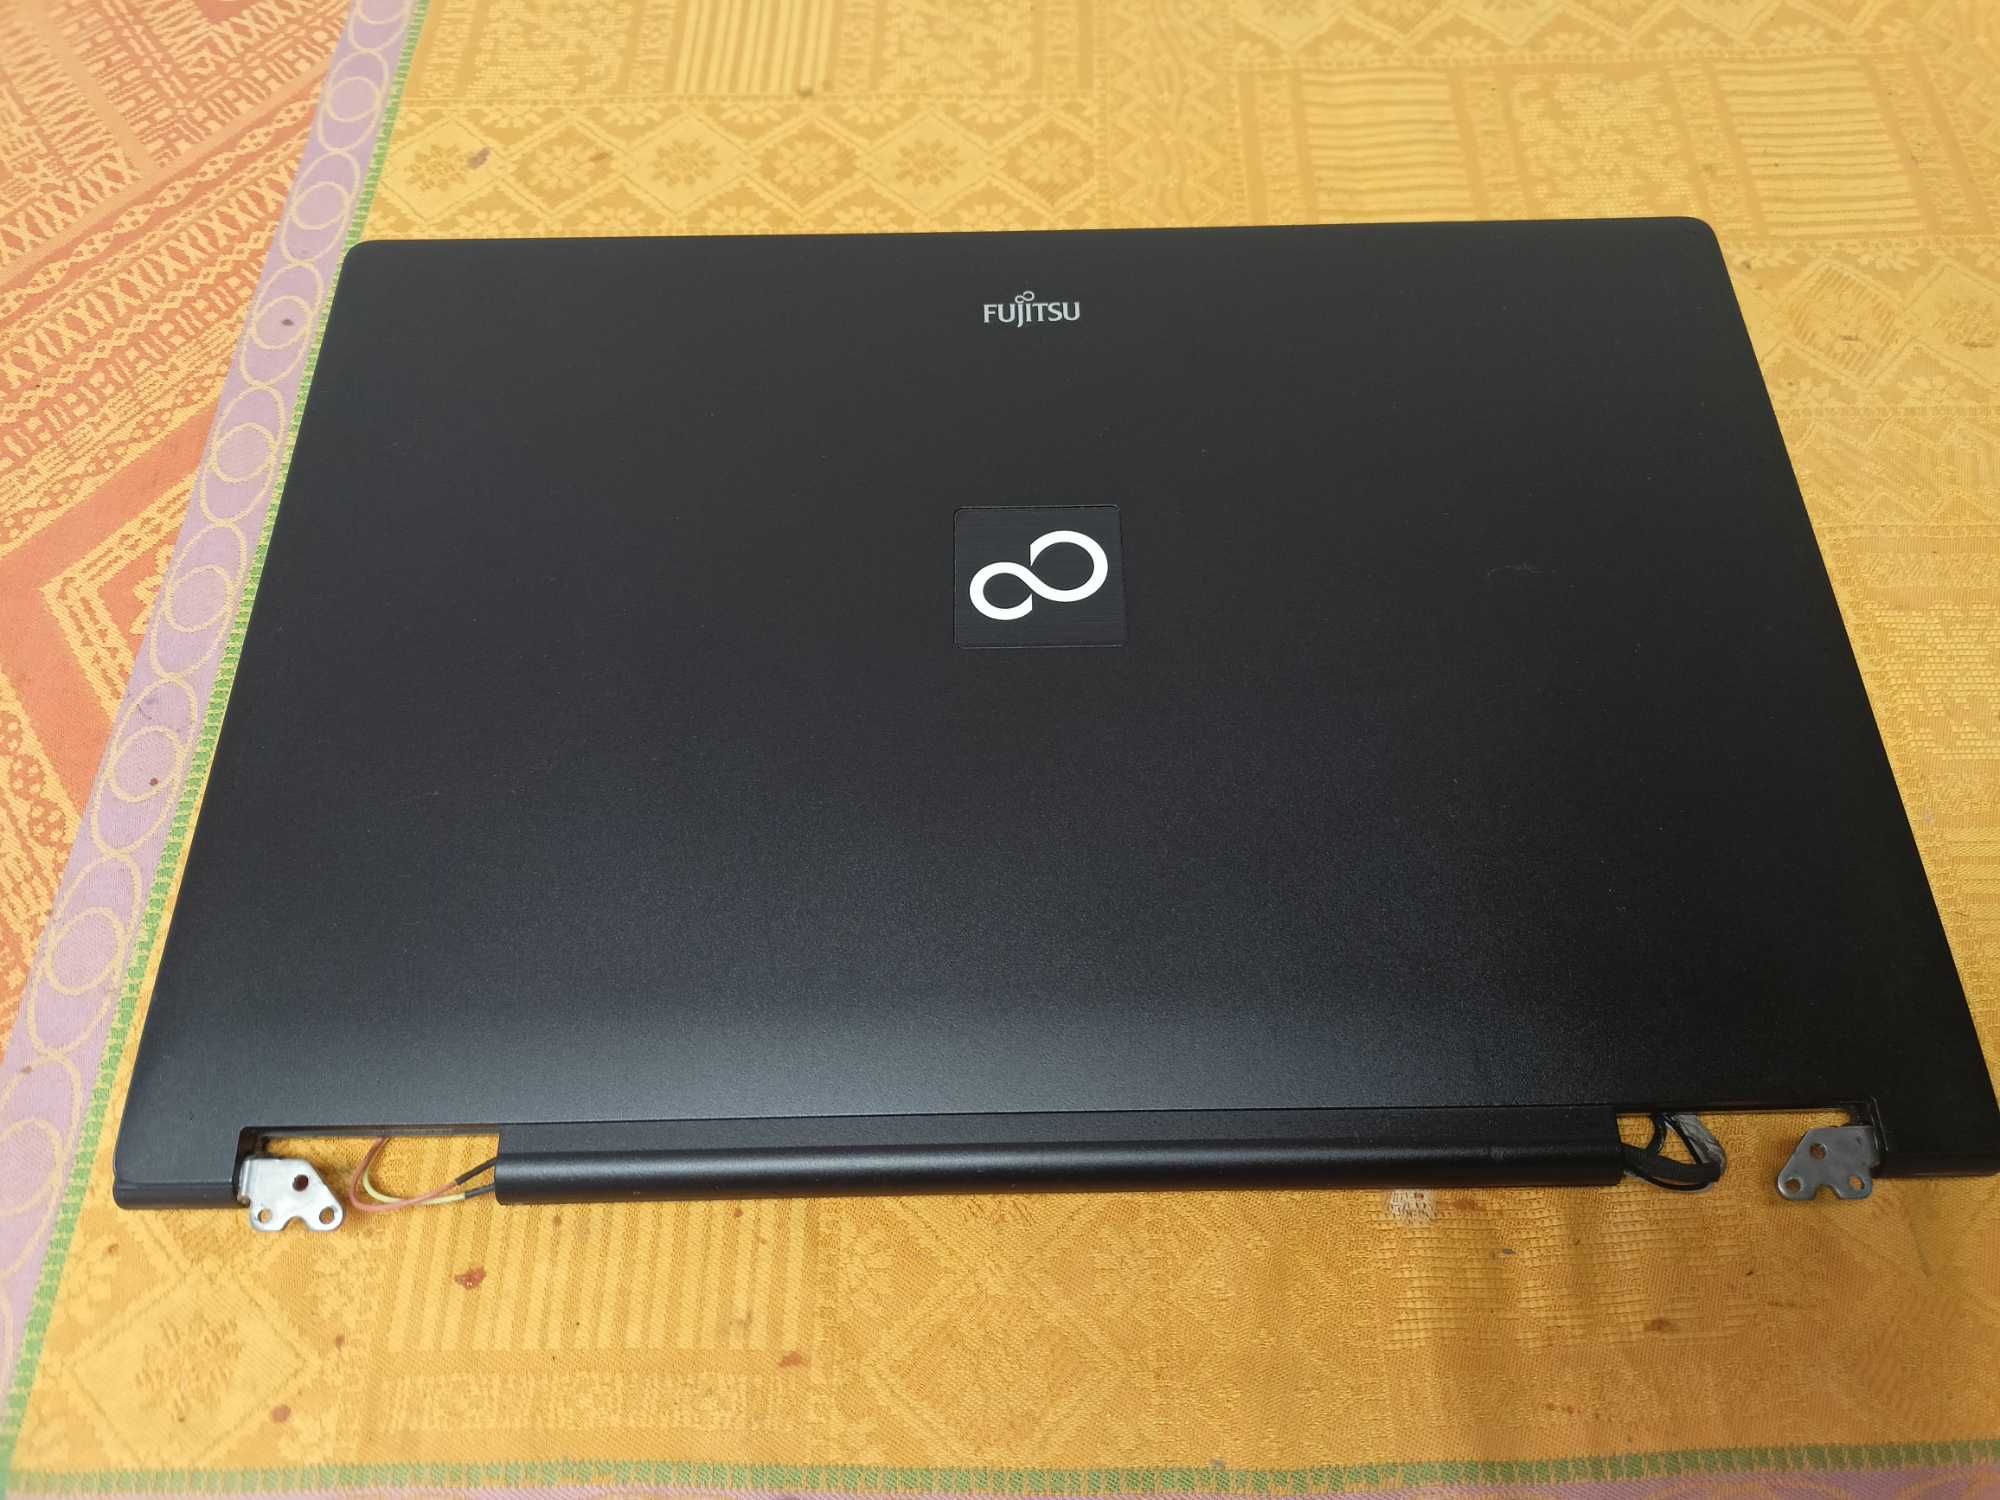 Dezmembrez Fujitsu LifeBook E780 : PretMic